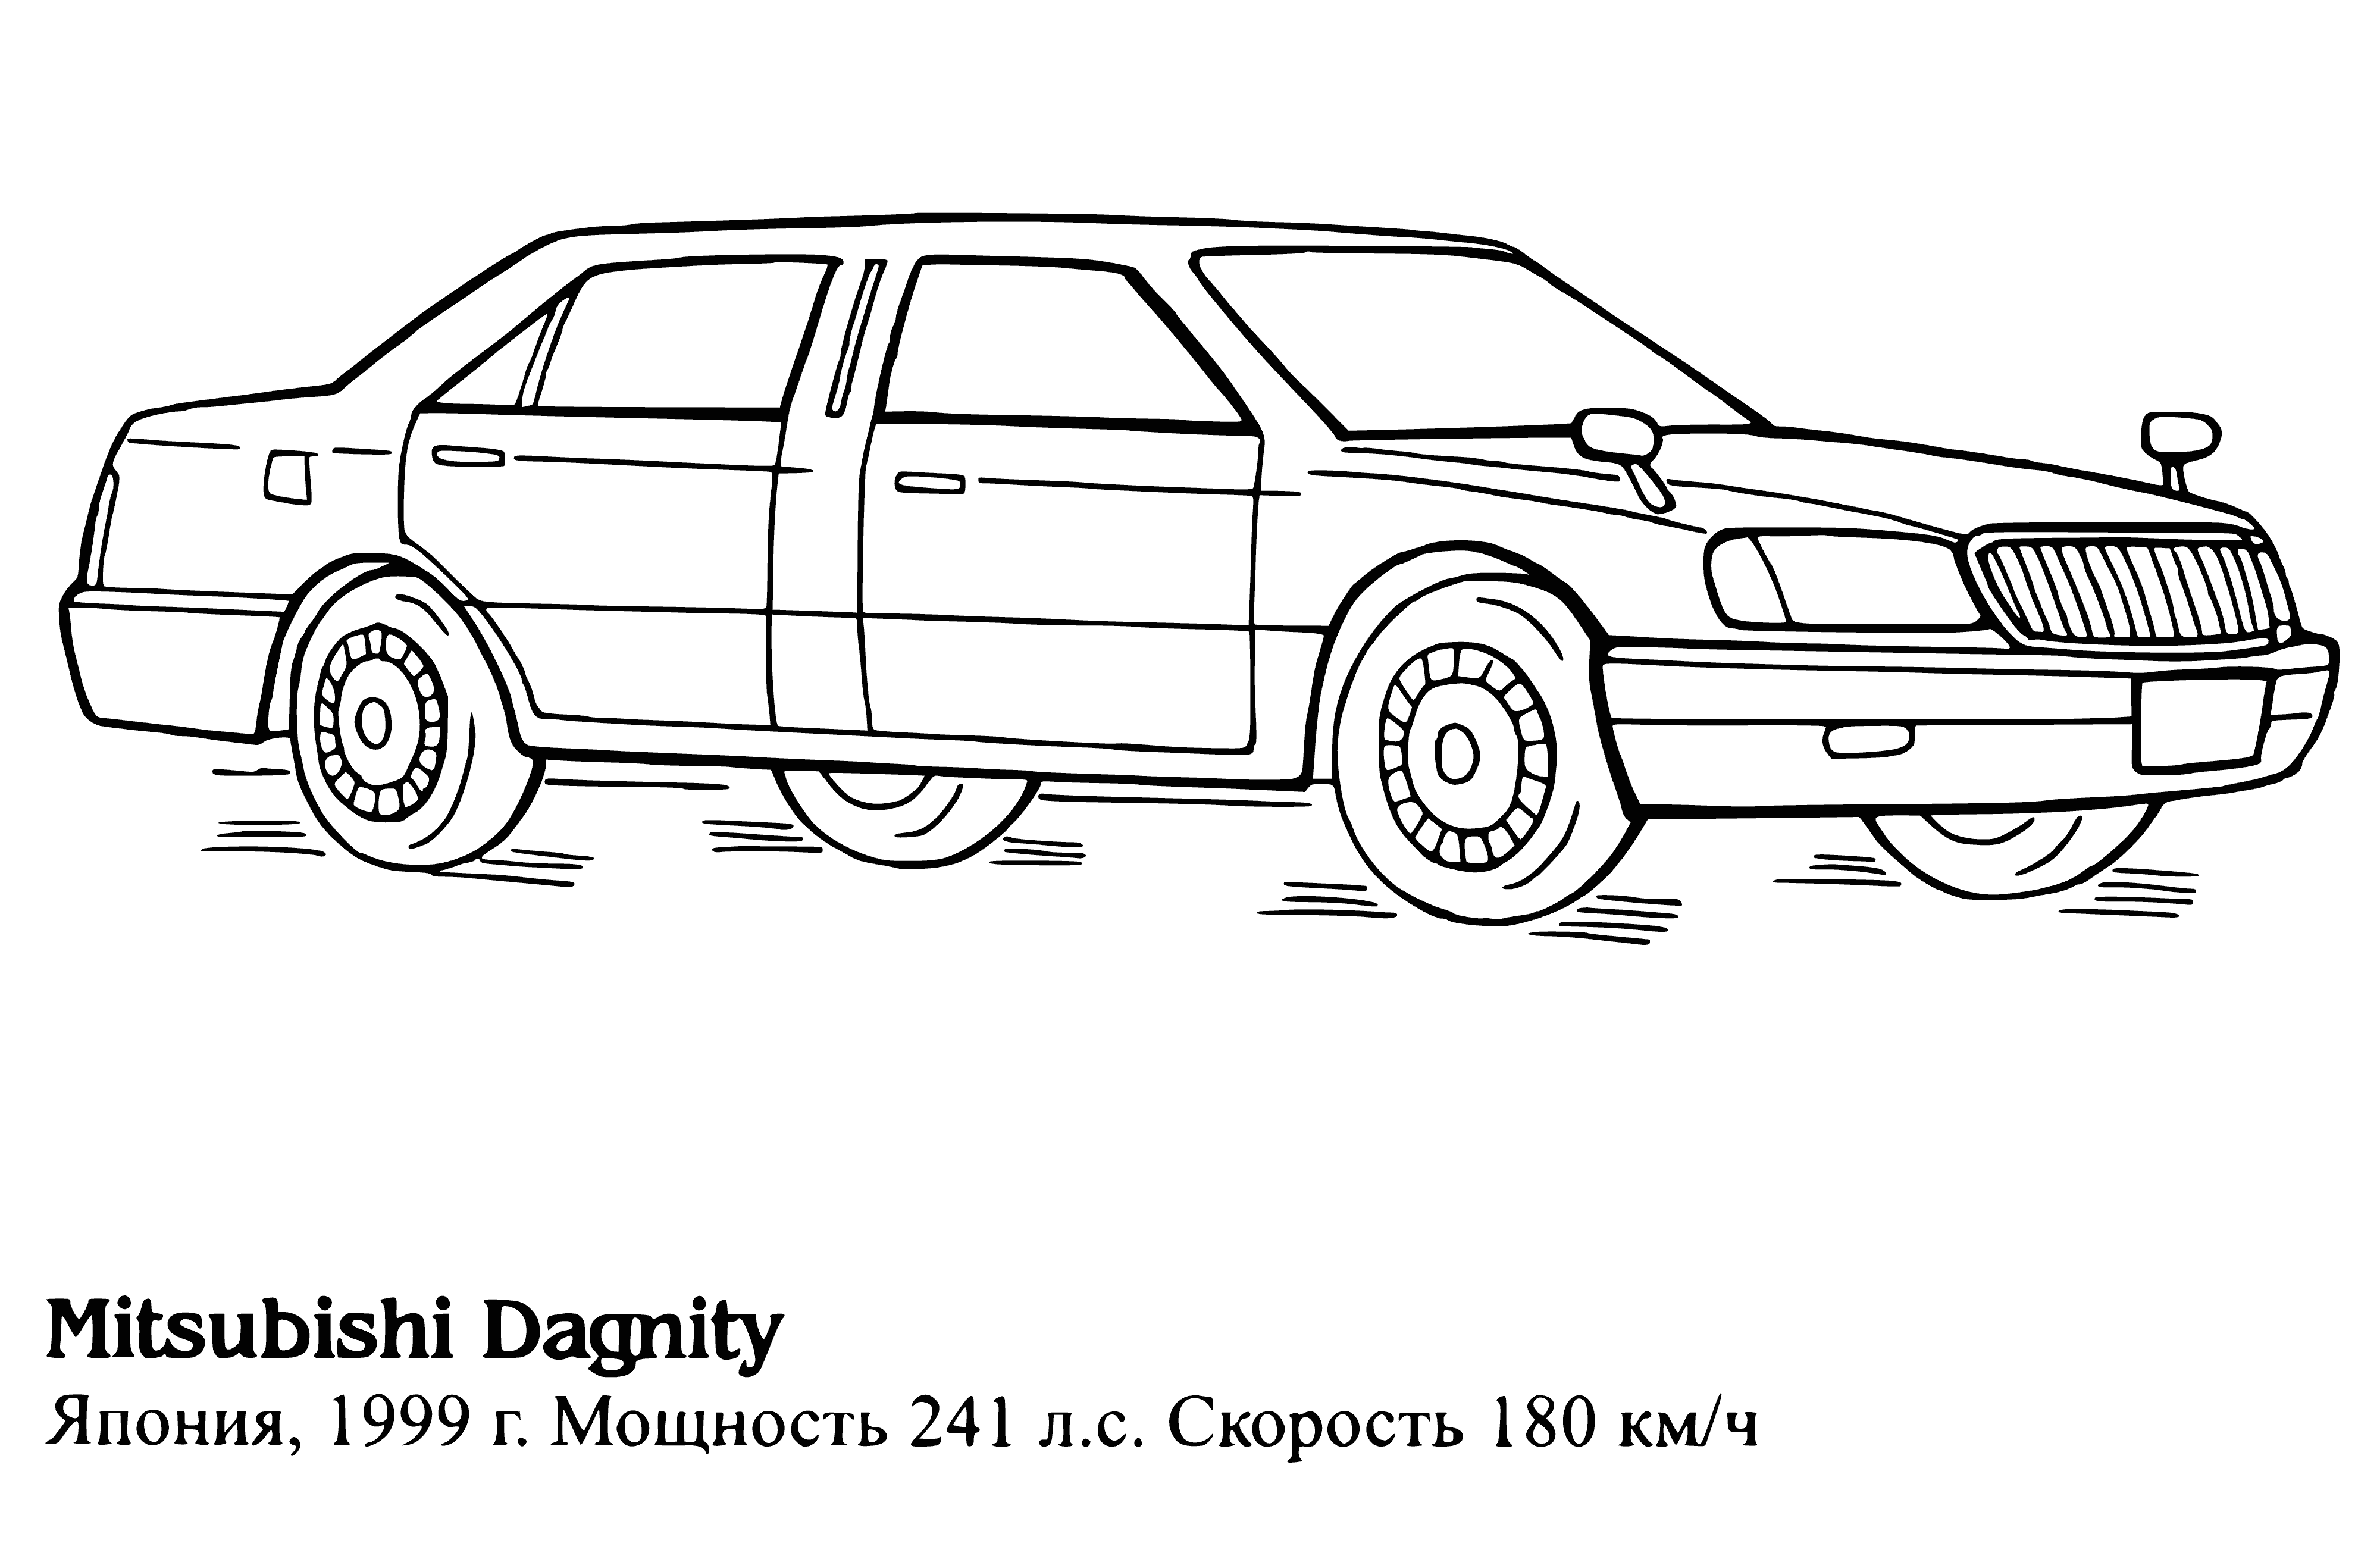 Mitsubishi Dagnity boyama sayfası